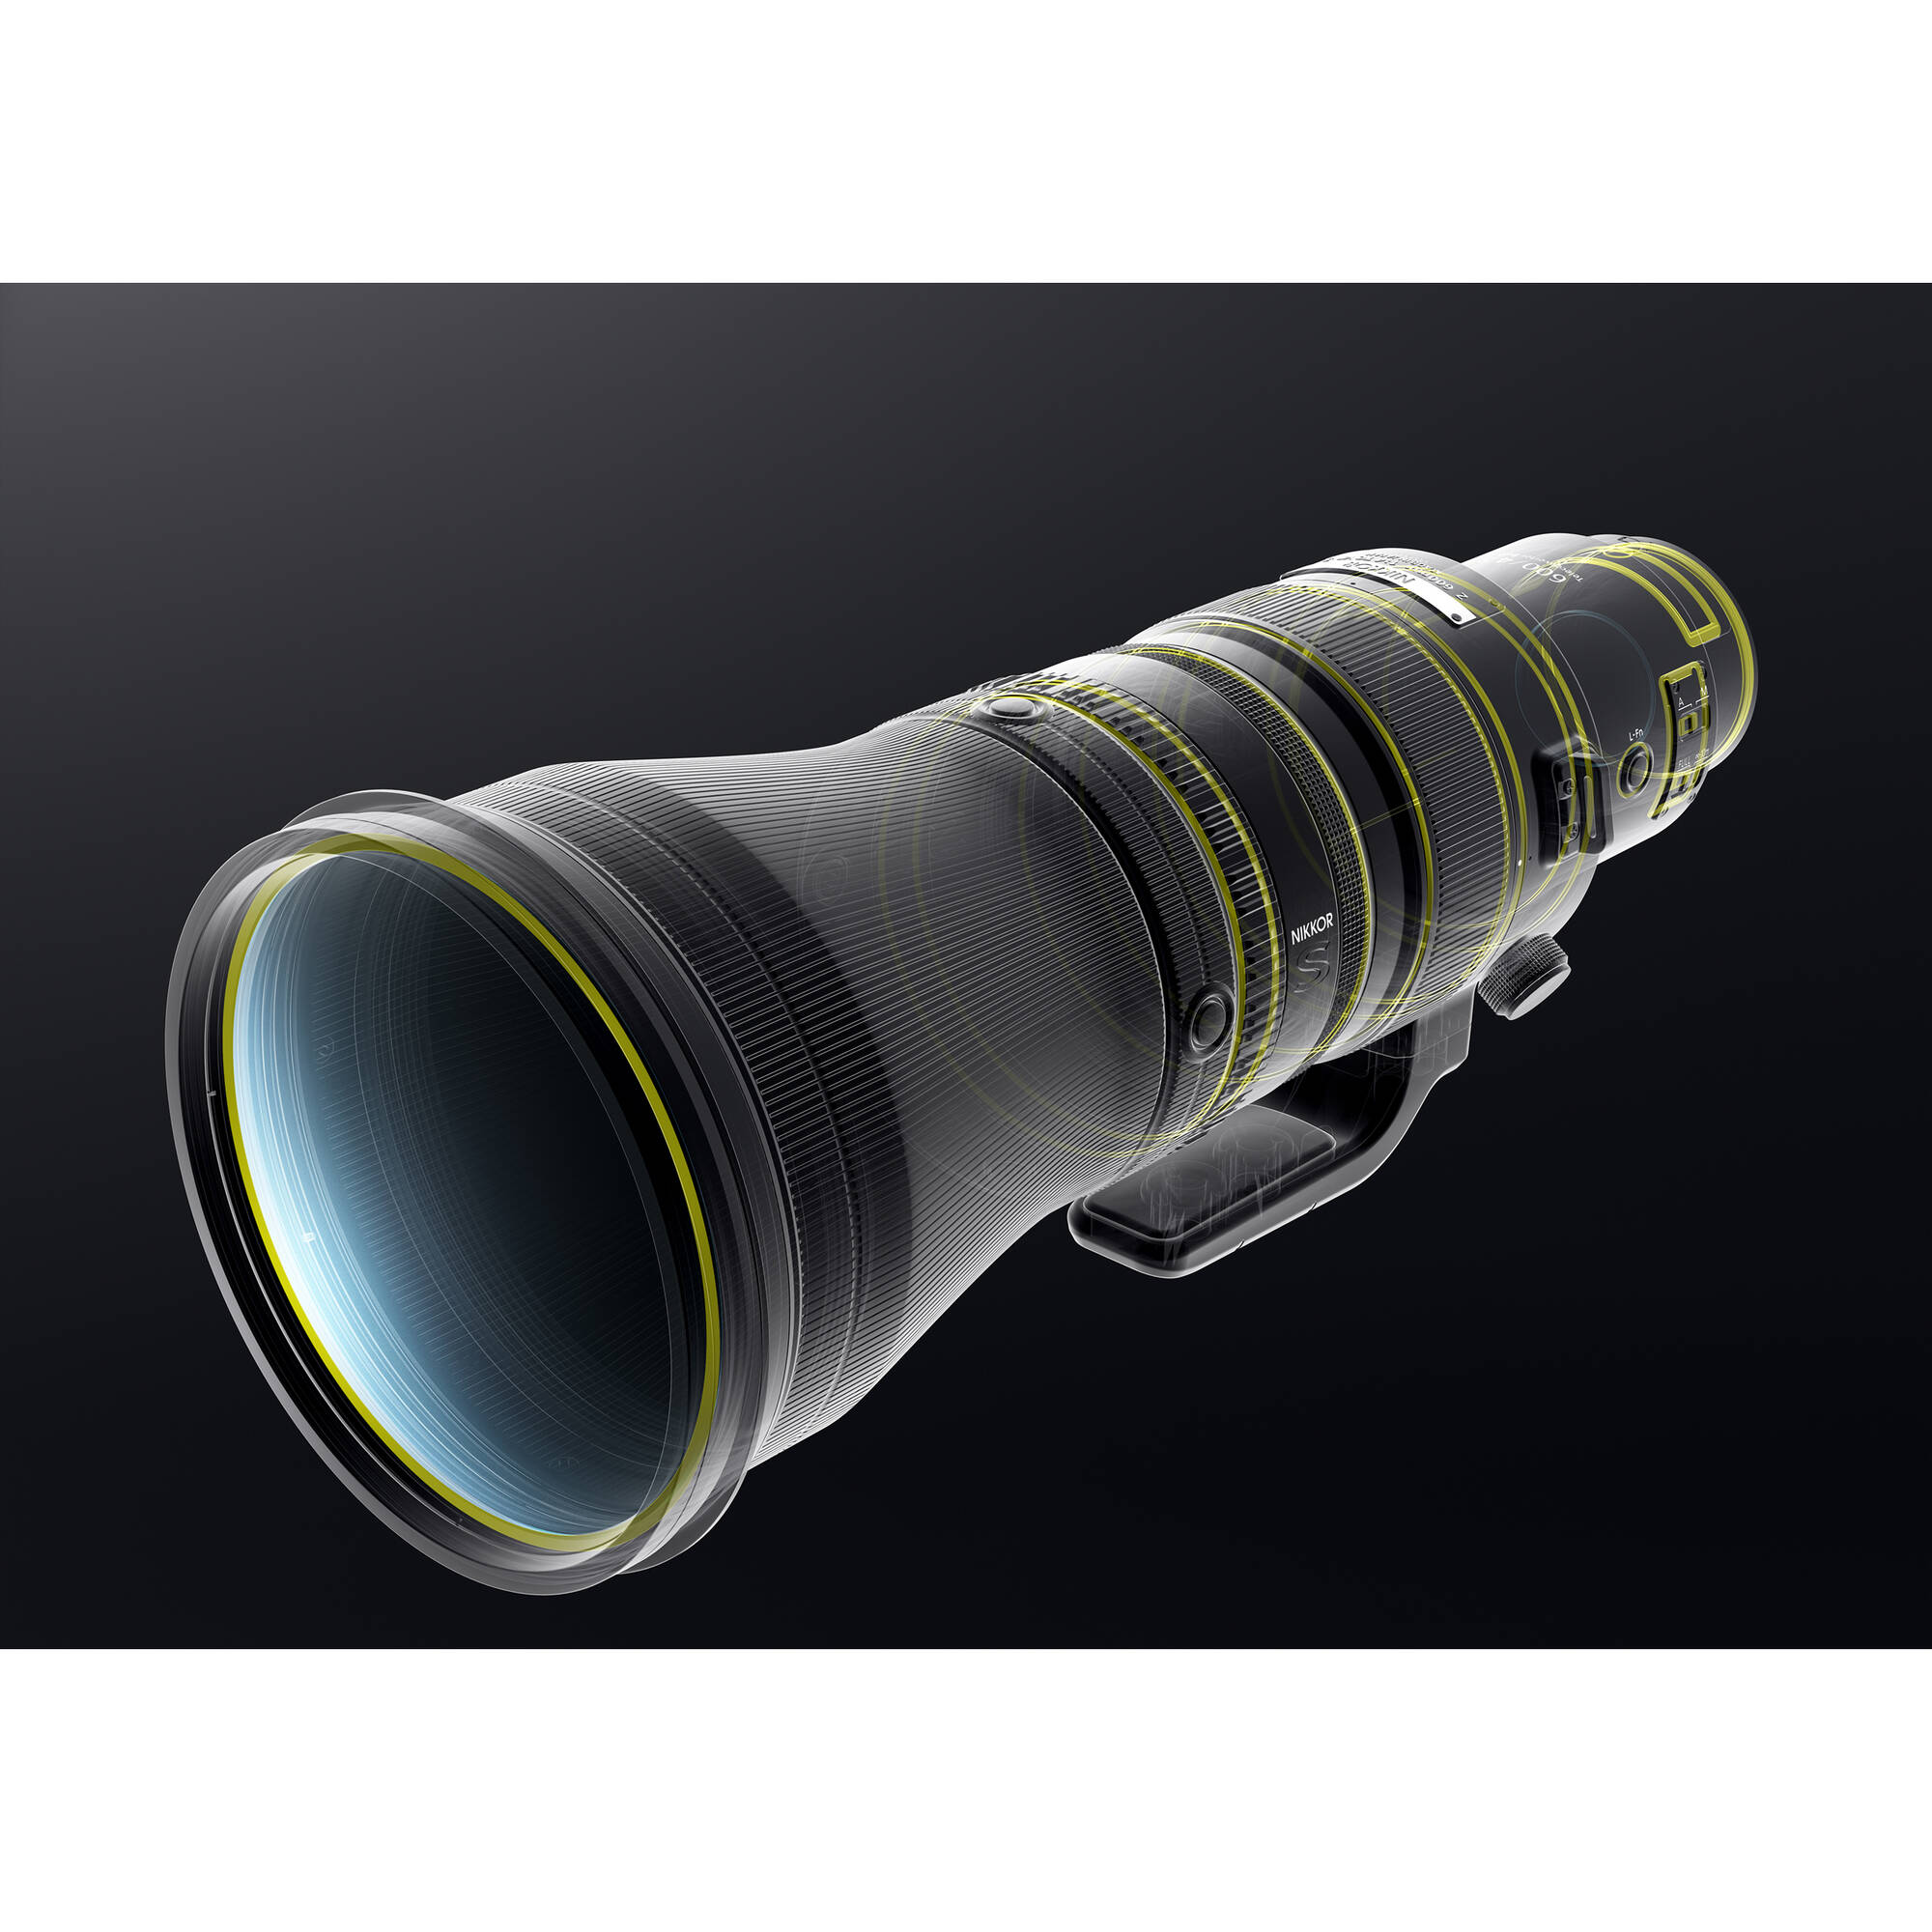 Nikon Nikkor Z 600mm F / 4 TC VR S Lens